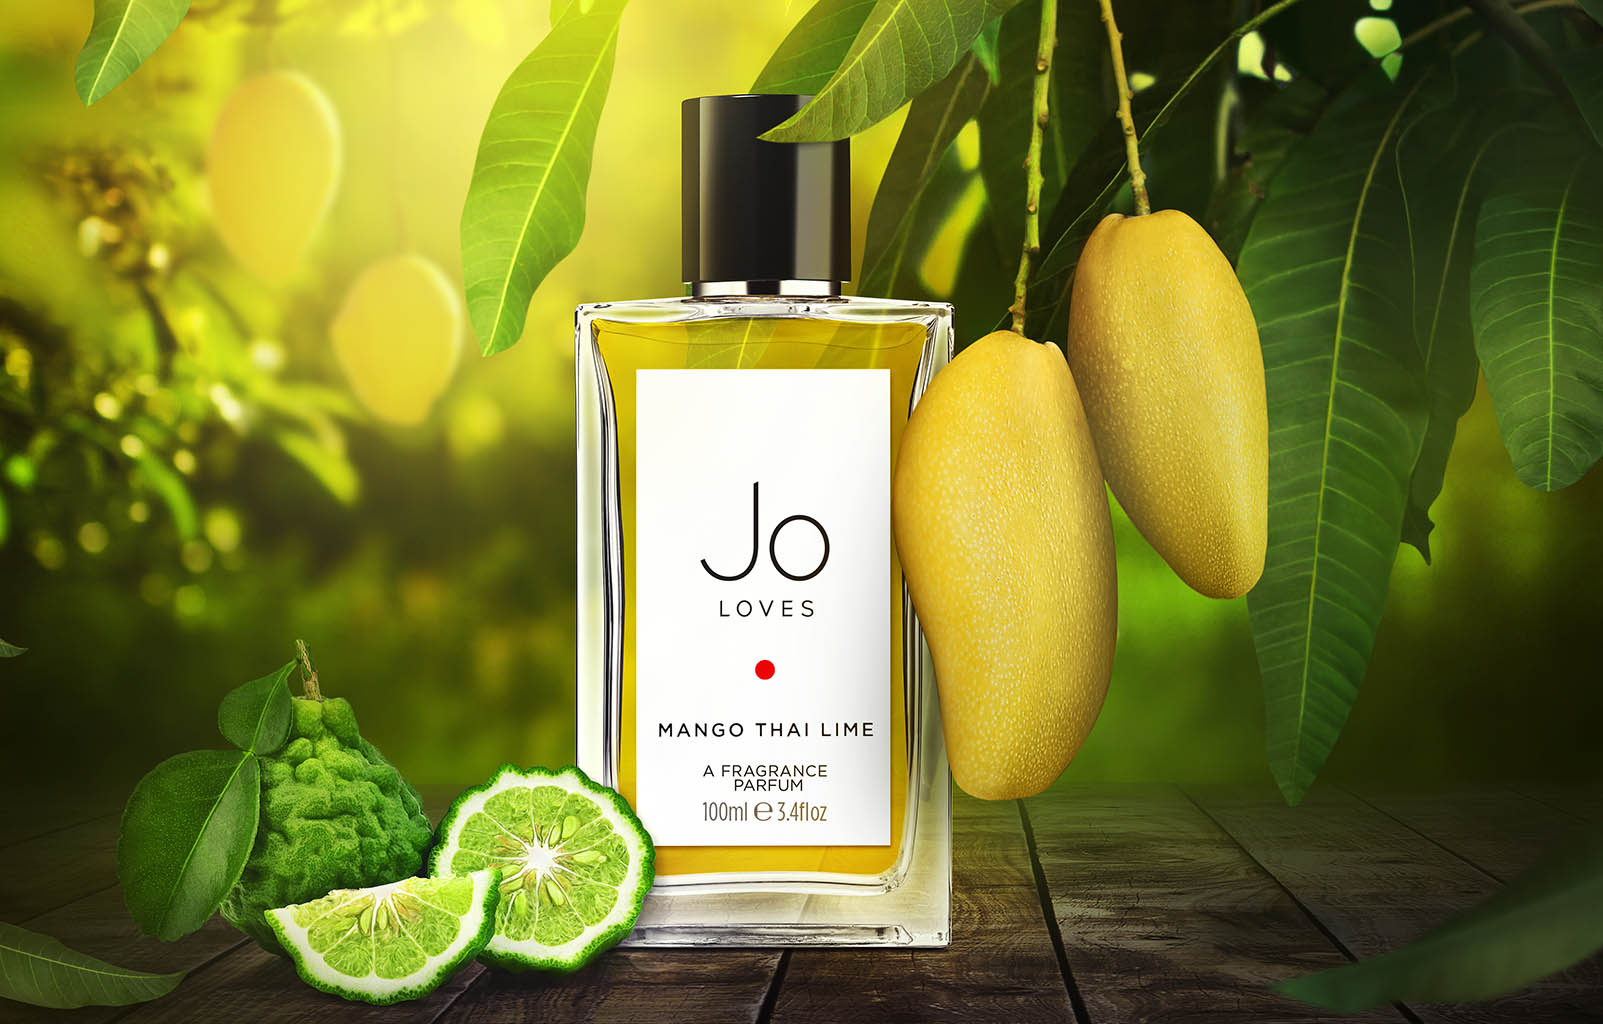 Packshot Factory - Coloured background - Jo Loves Mango Thai Lime fragrance bottle